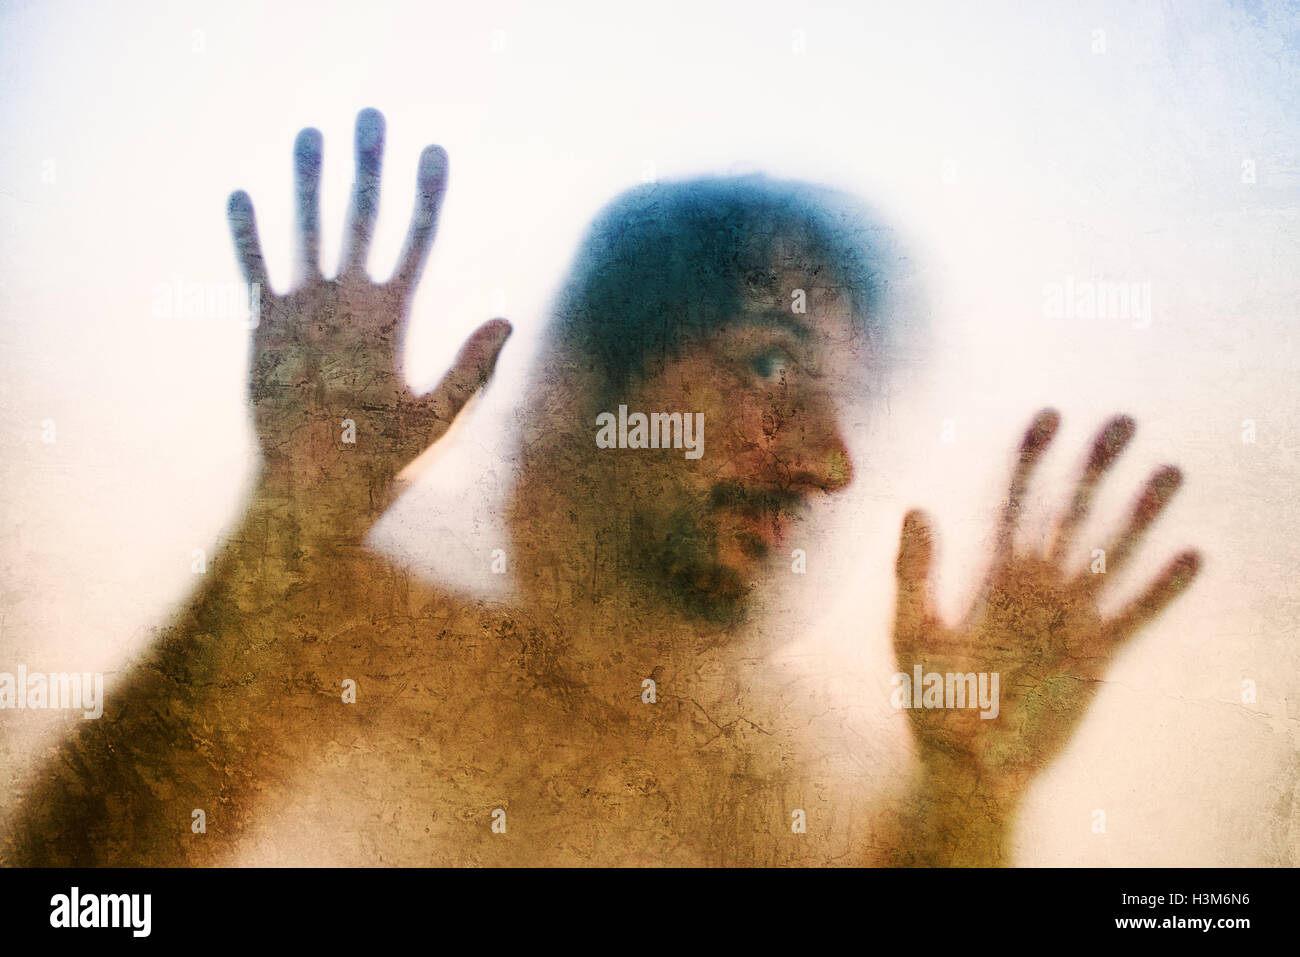 Uomo intrappolato concetto con back lit silhouette di mani dietro il vetro opaco, utili come immagine illustrativa per il traffico di esseri umani, pr Foto Stock